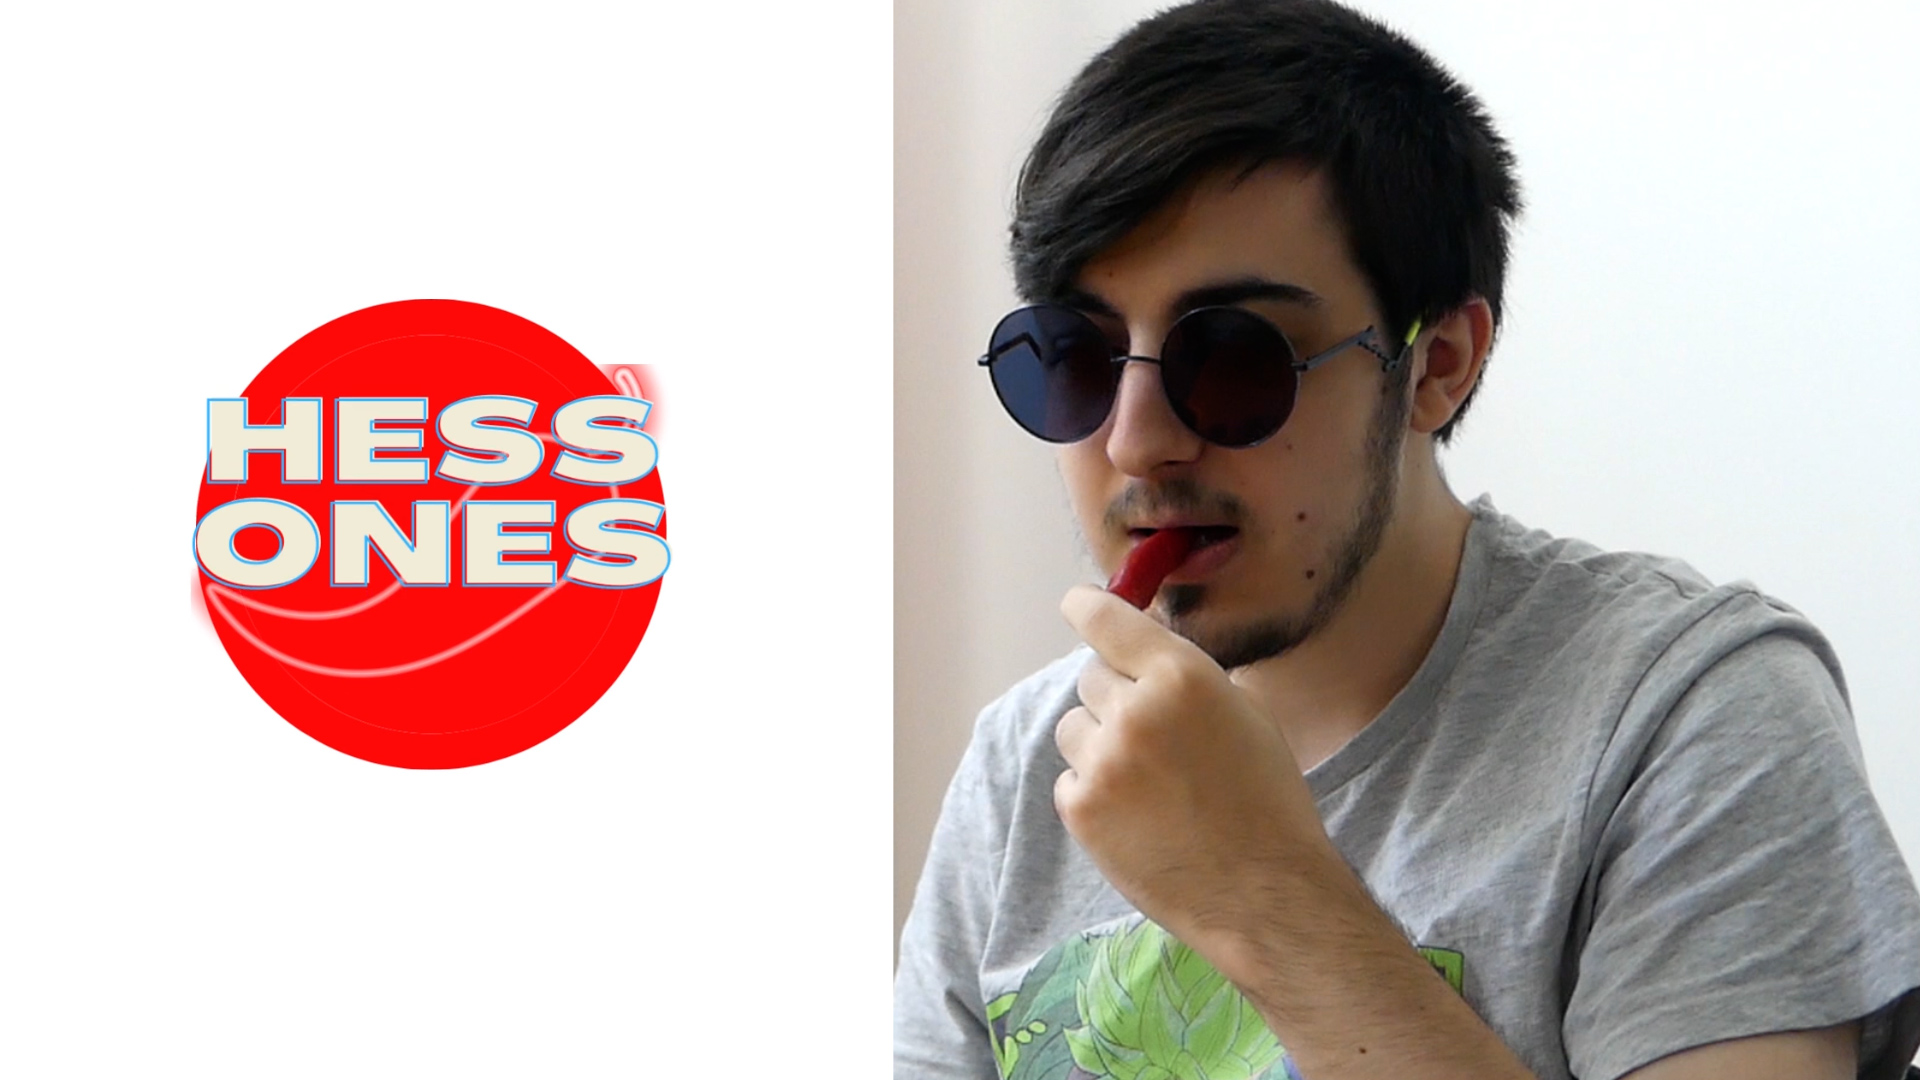 Visuel de Lorenzo, animateur dans la vidéo en train de manger un piment